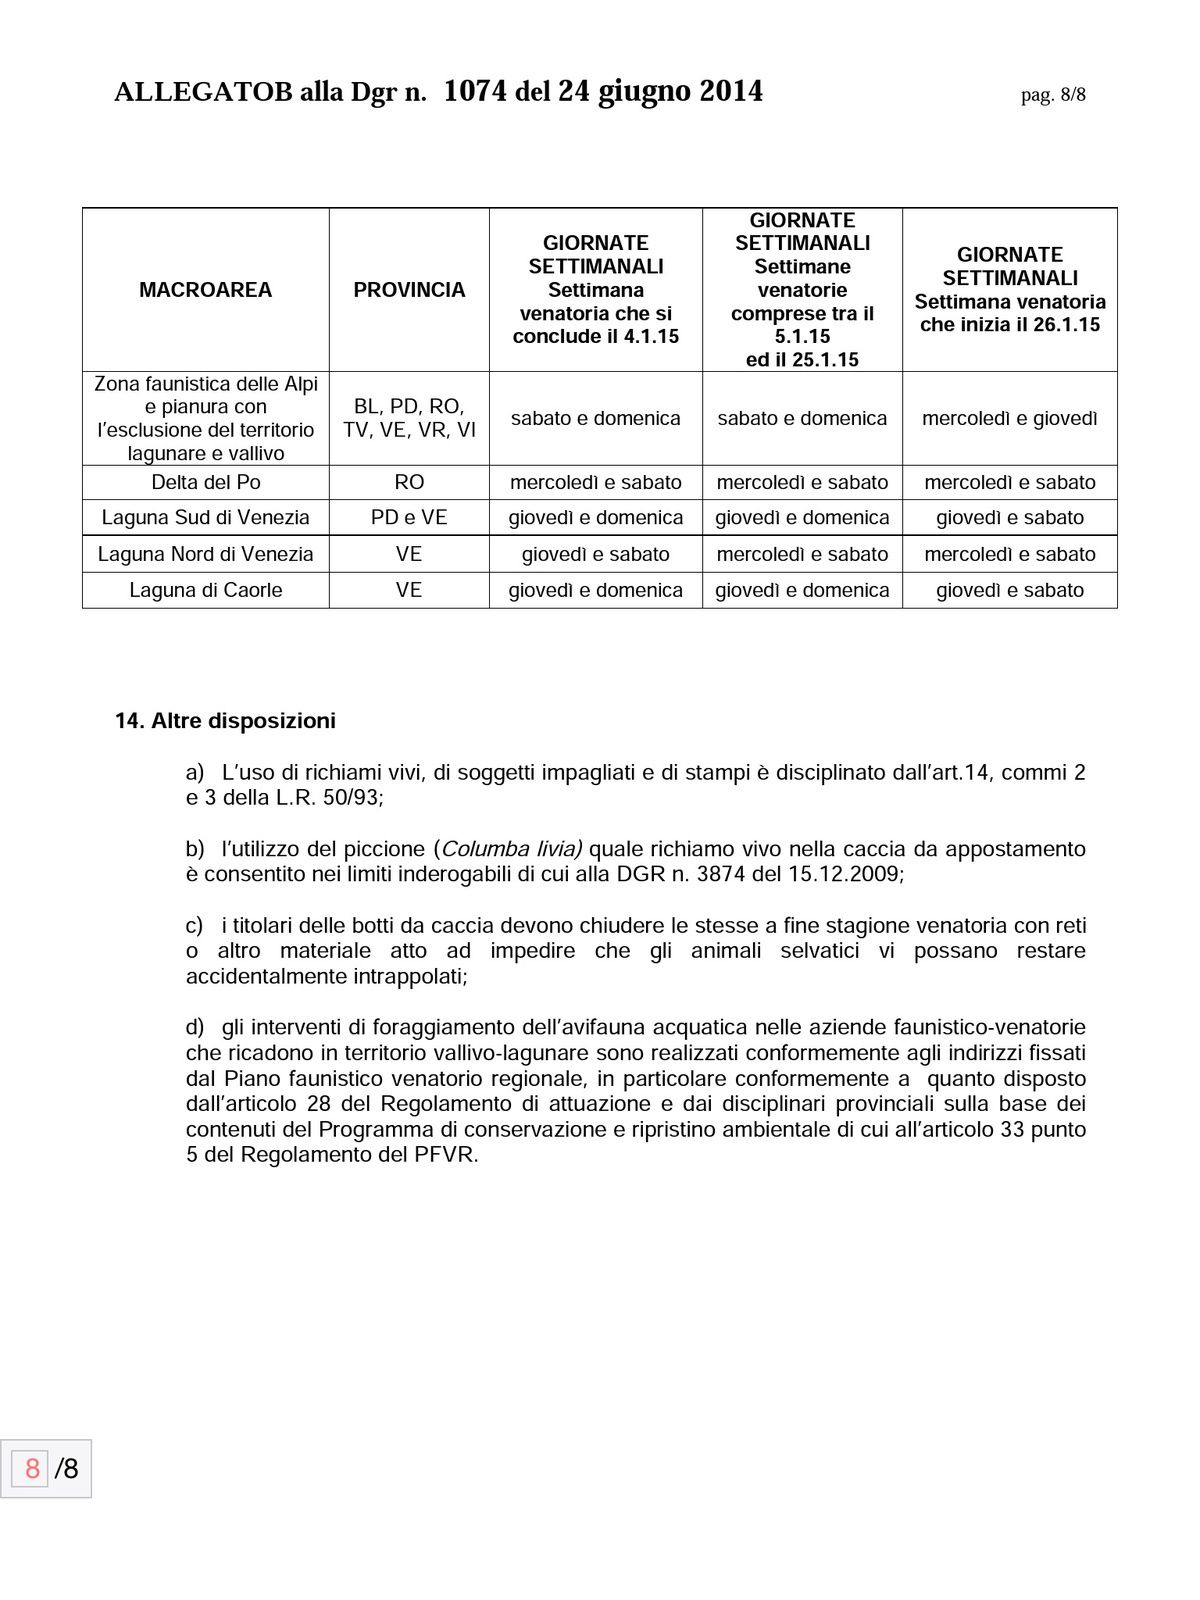 Calendario Venatorio Veneto 2014/2015